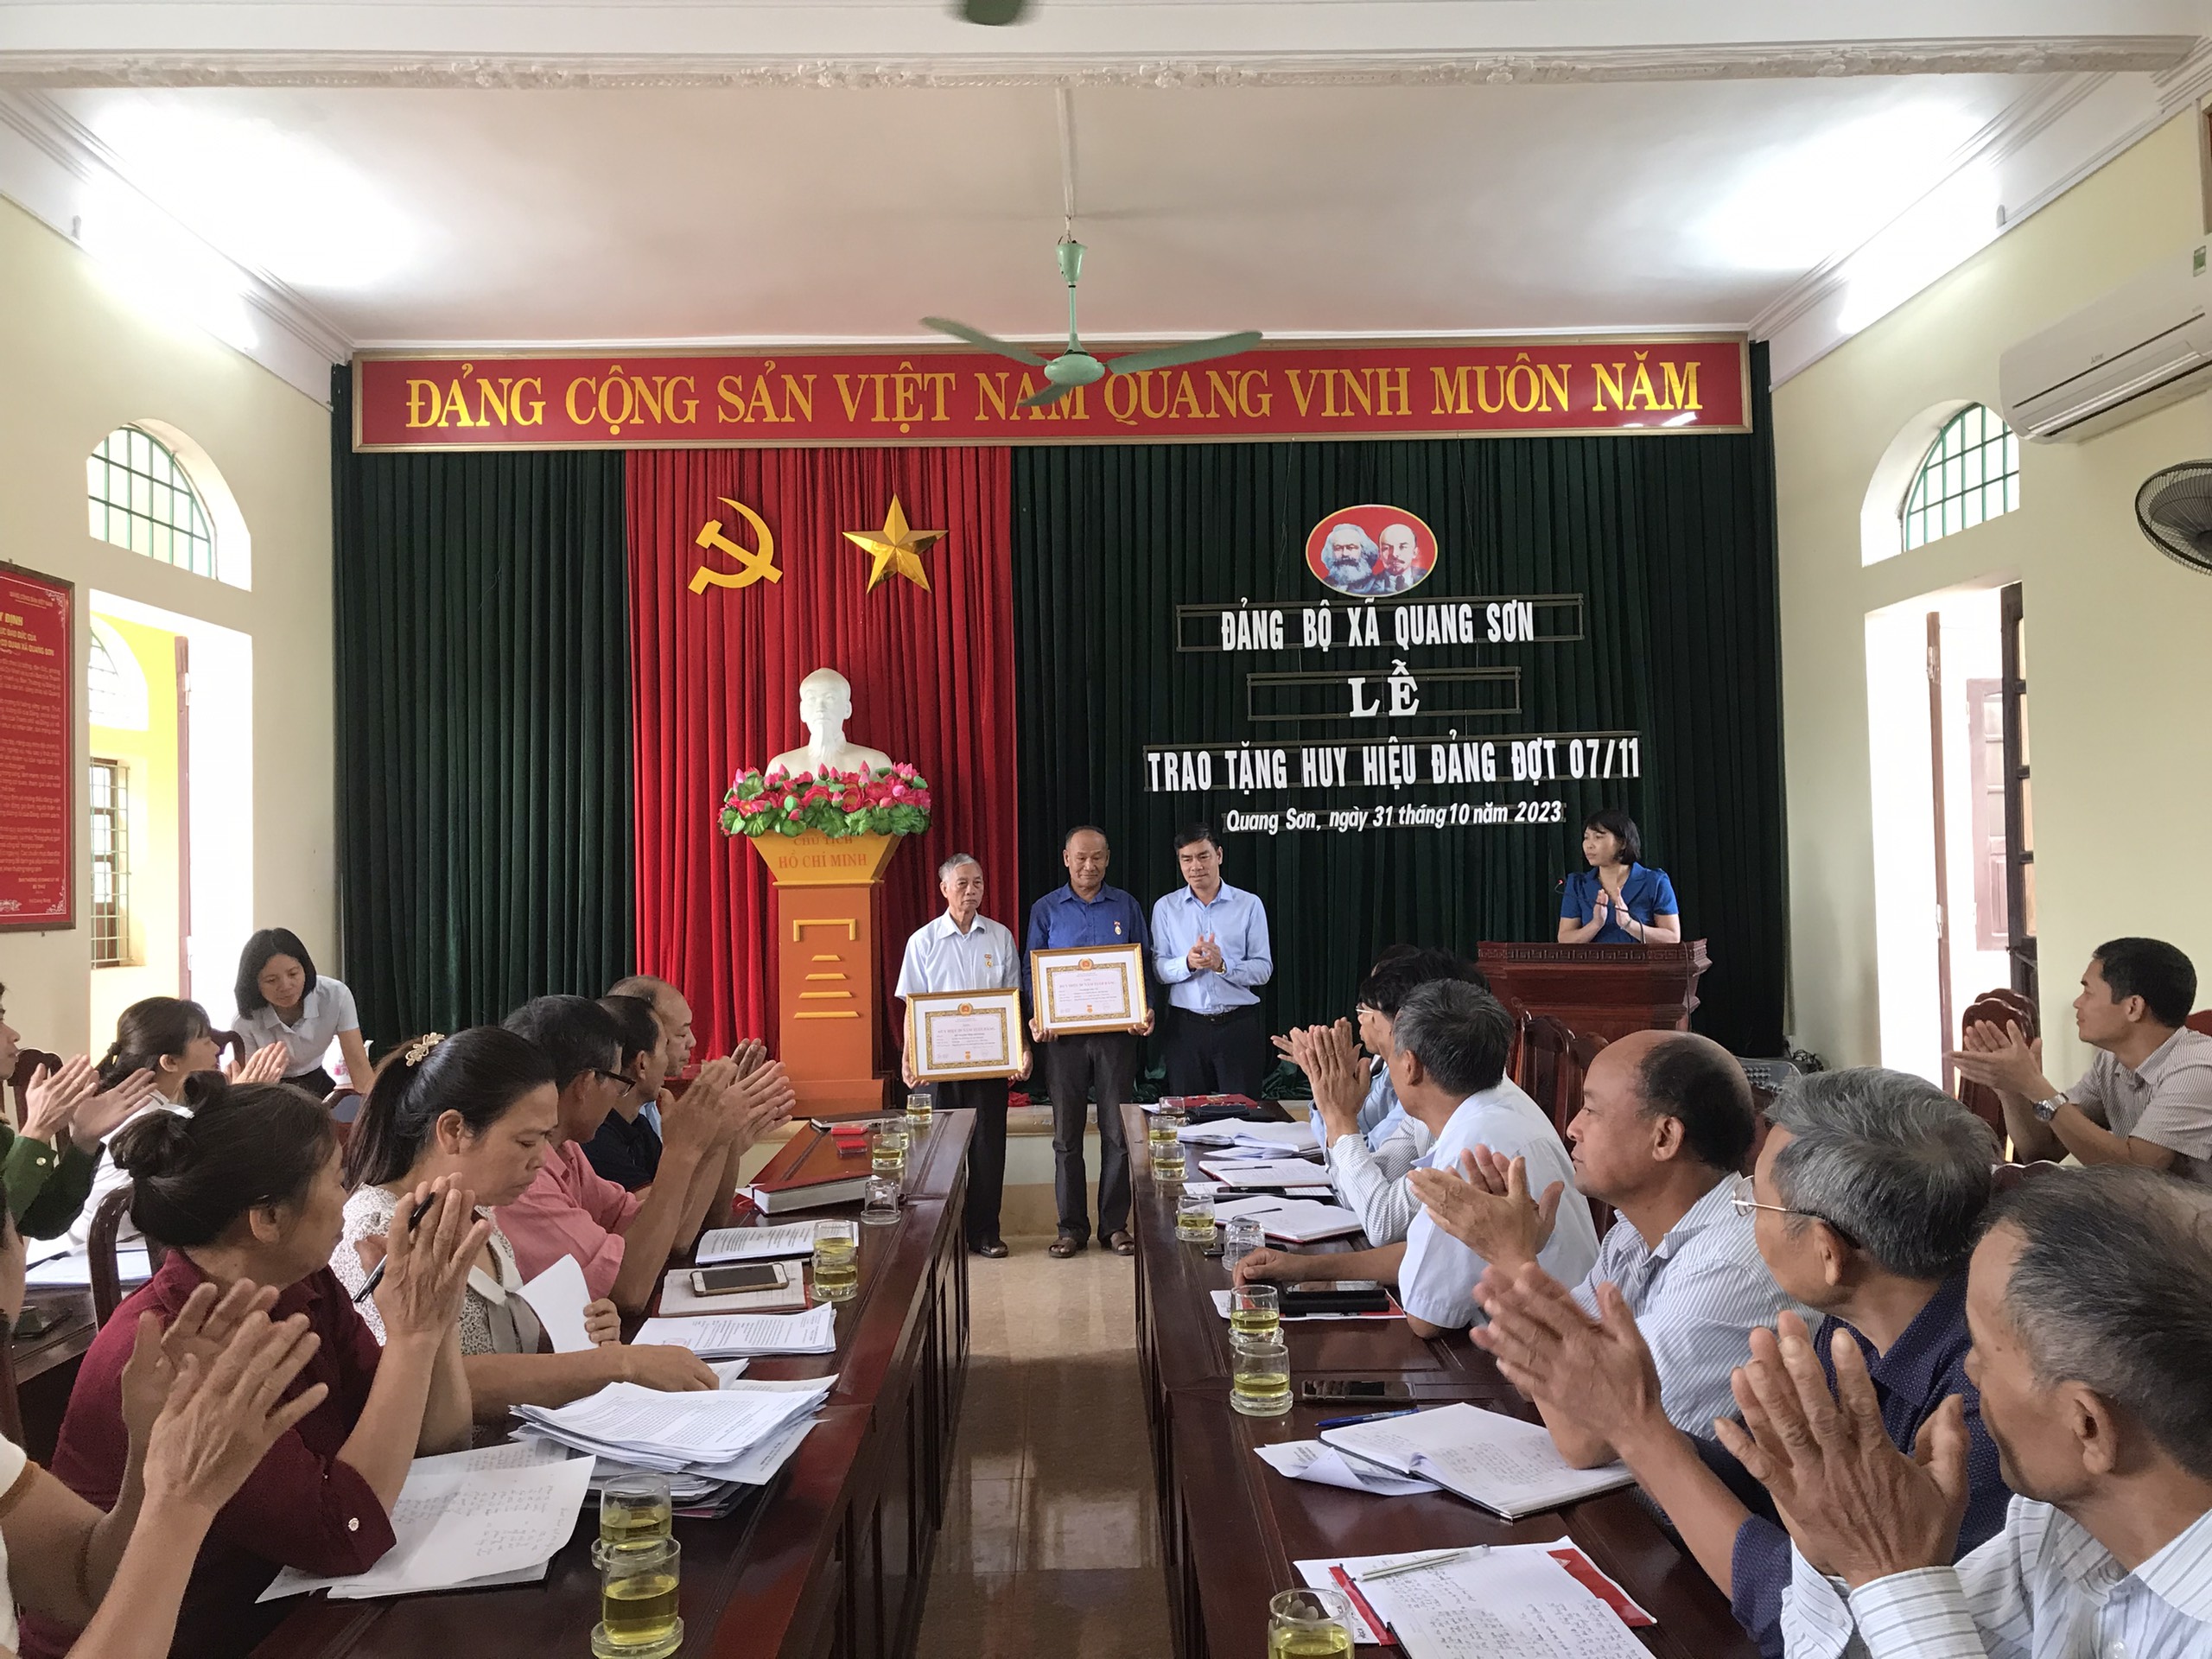 Đảng bộ xã Quang Sơn trao tặng, truy tặng Huy hiệu Đảng đợt 07/11